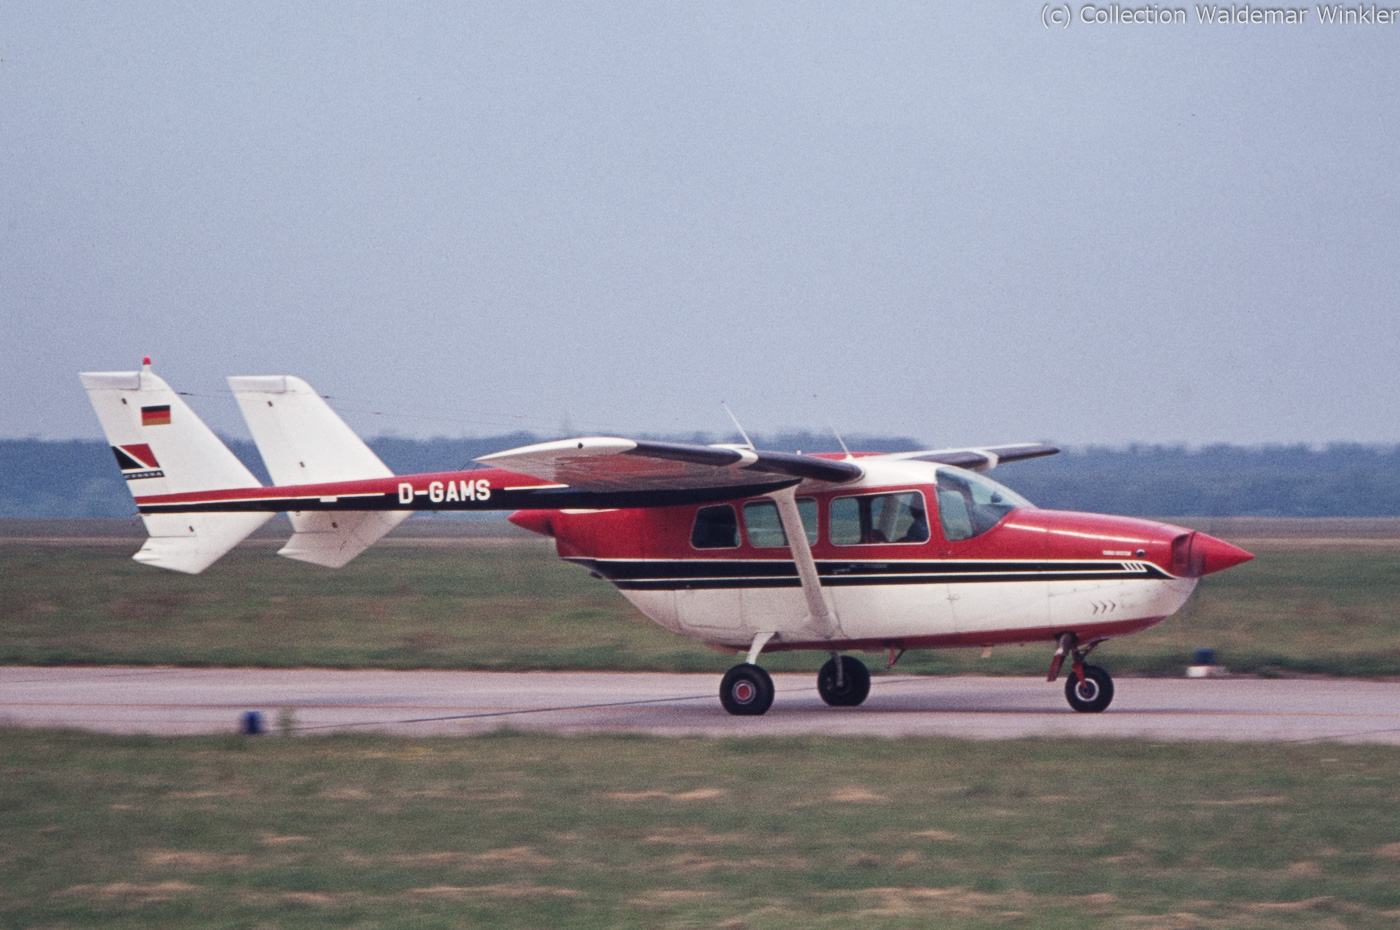 Cessna_T337_Skymaster_DSC_2963.jpg